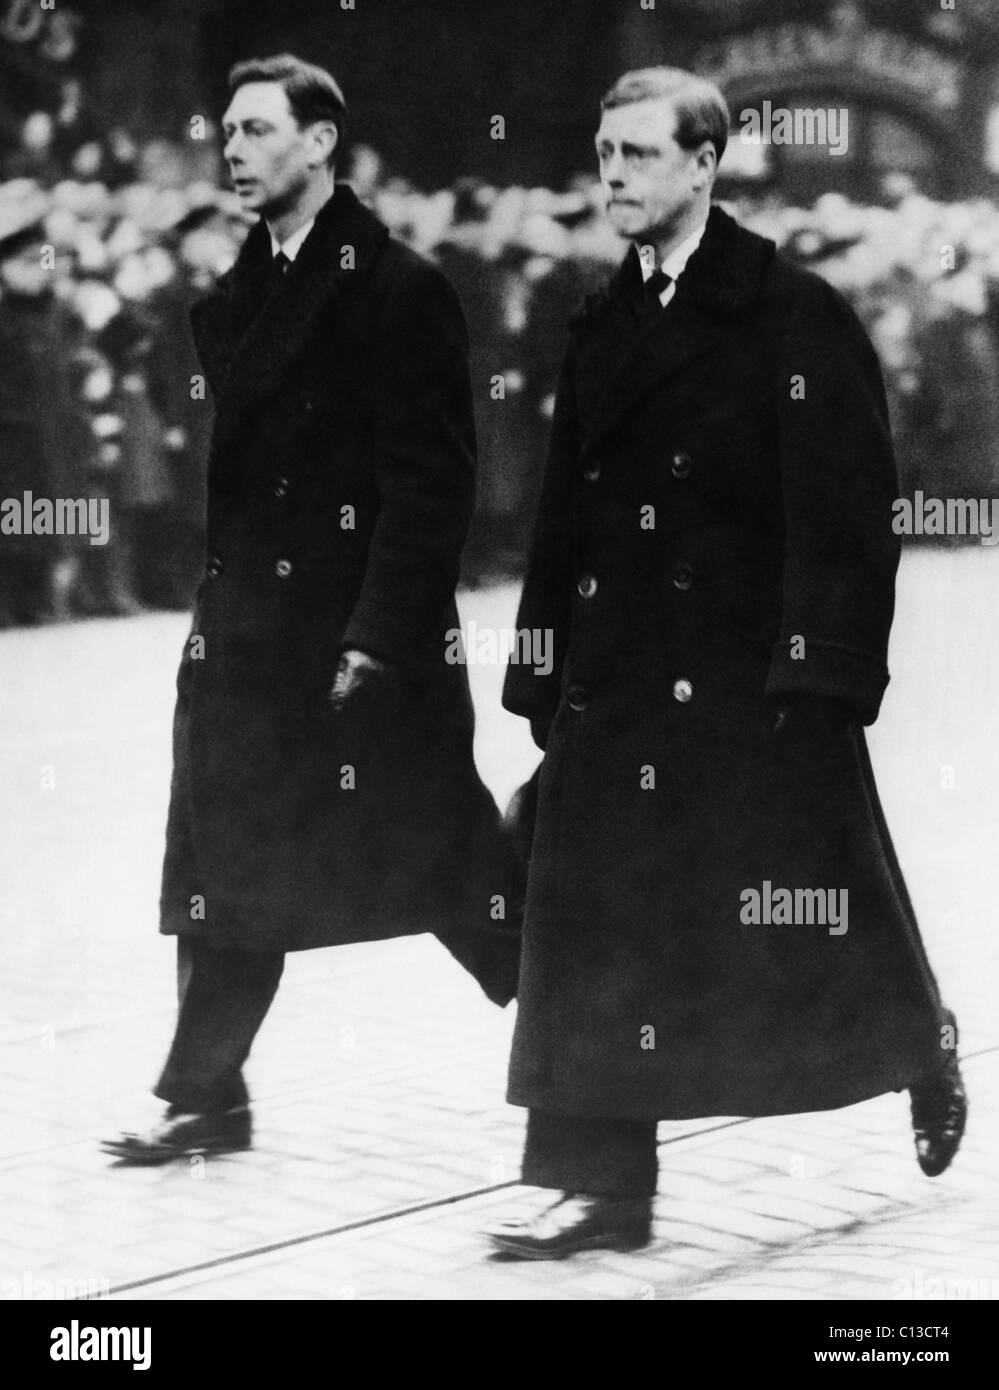 Famiglia Reale Britannica. Prince Albert, il Duca di York (futuro re Giorgio VI di Inghilterra) e King Edward VIII d'Inghilterra, (futuro duca di Windsor), ai funerali di Re Giorgio V, 29 gennaio 1936. Foto Stock